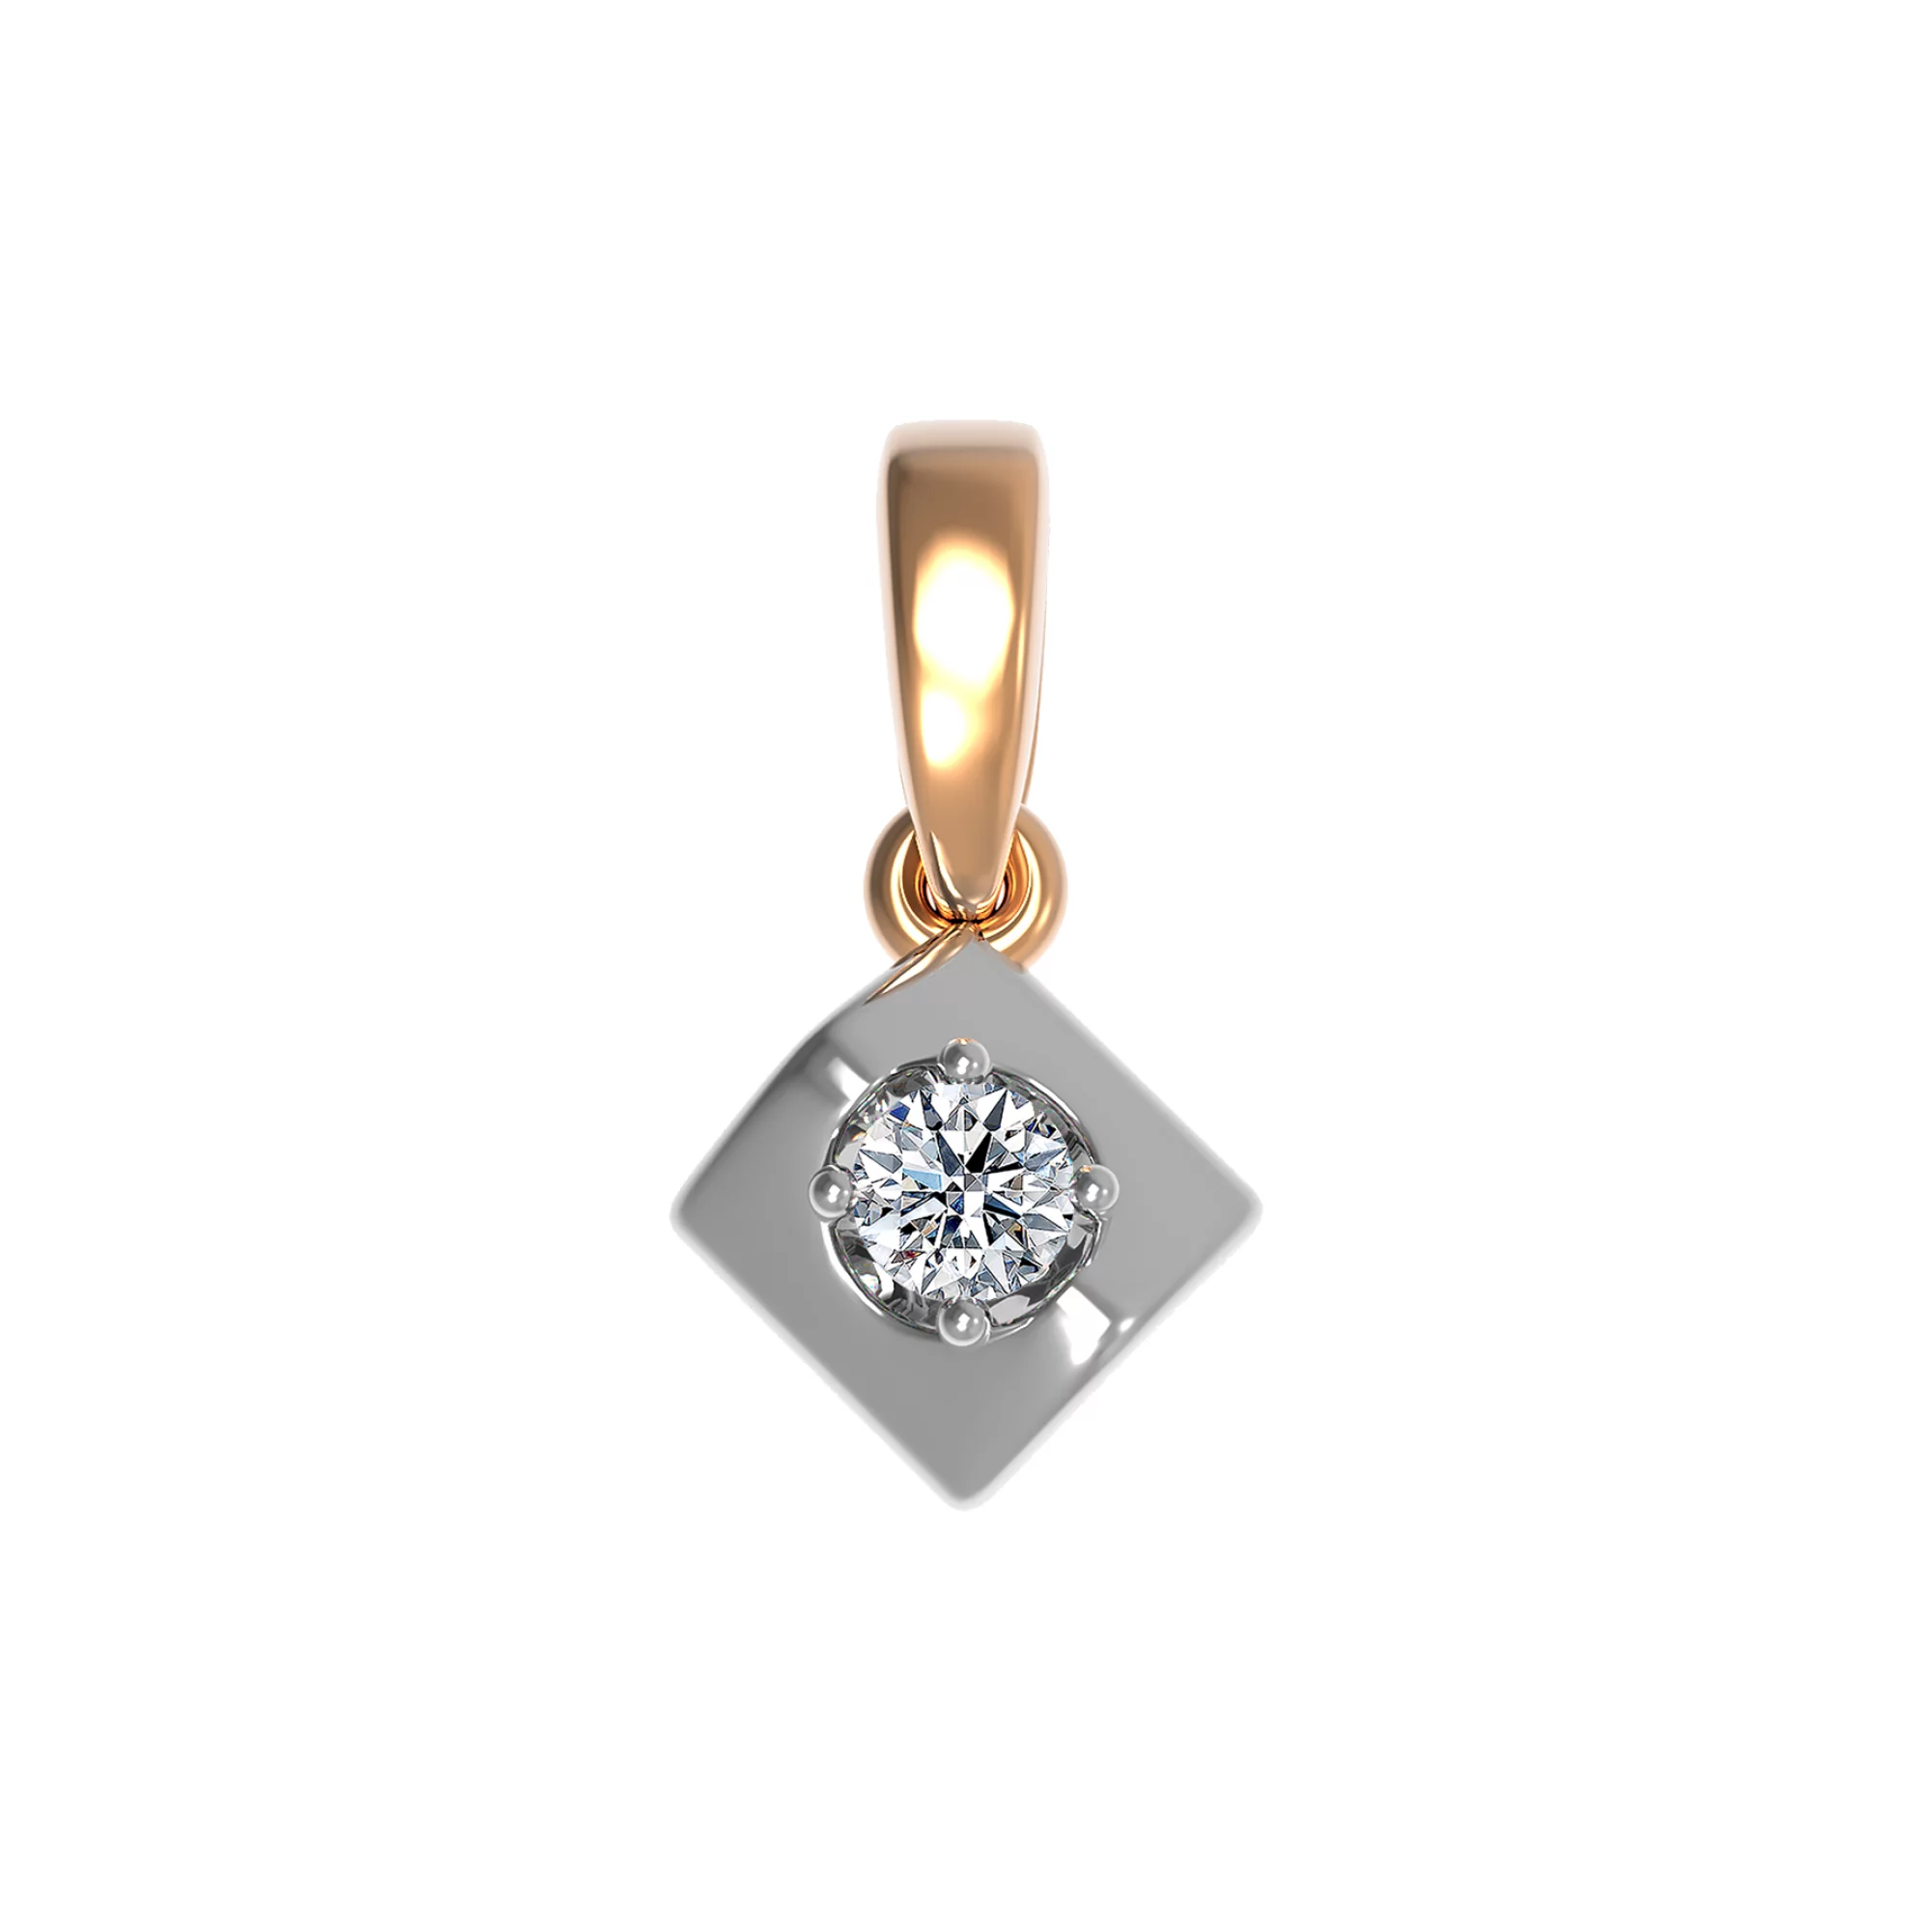 Подвеска золотая с бриллиантами - 904455 – изображение 1